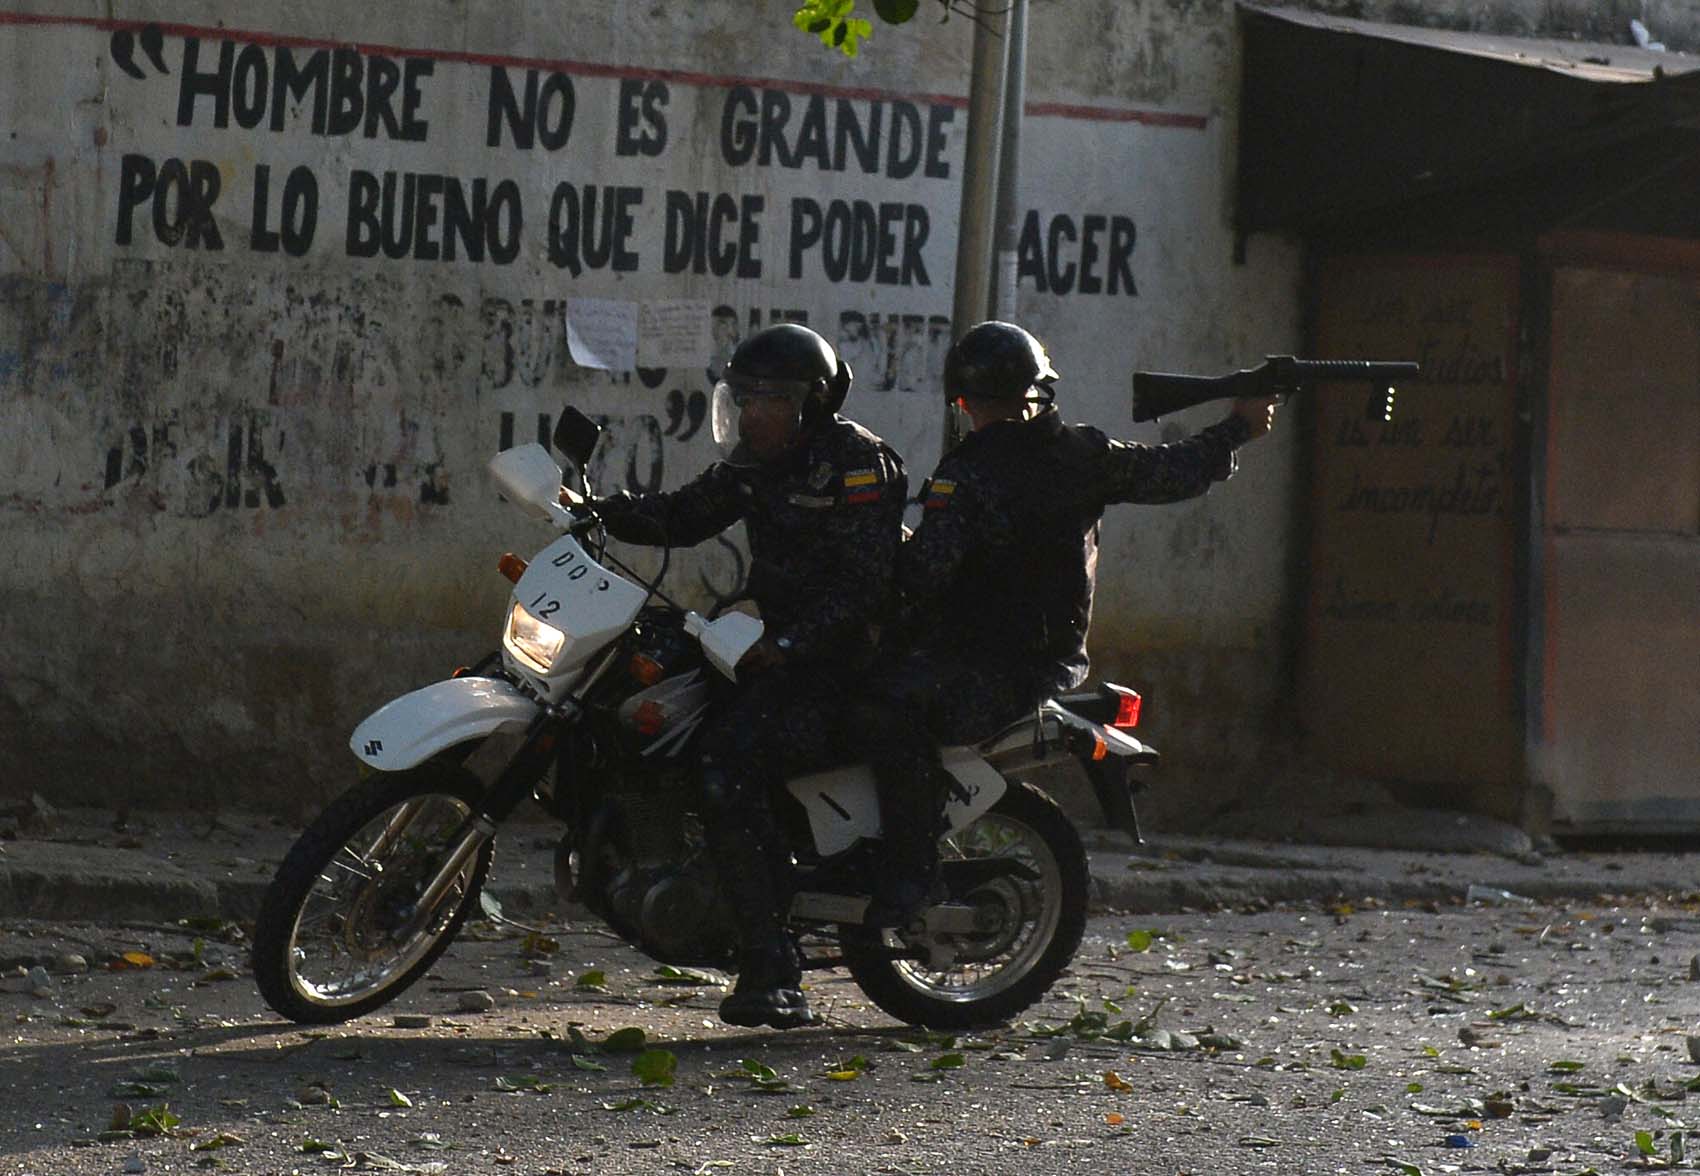 Brutal represión del régimen de Maduro ha dejado 43 asesinados y 956 detenciones arbitrarias desde el #21Ene